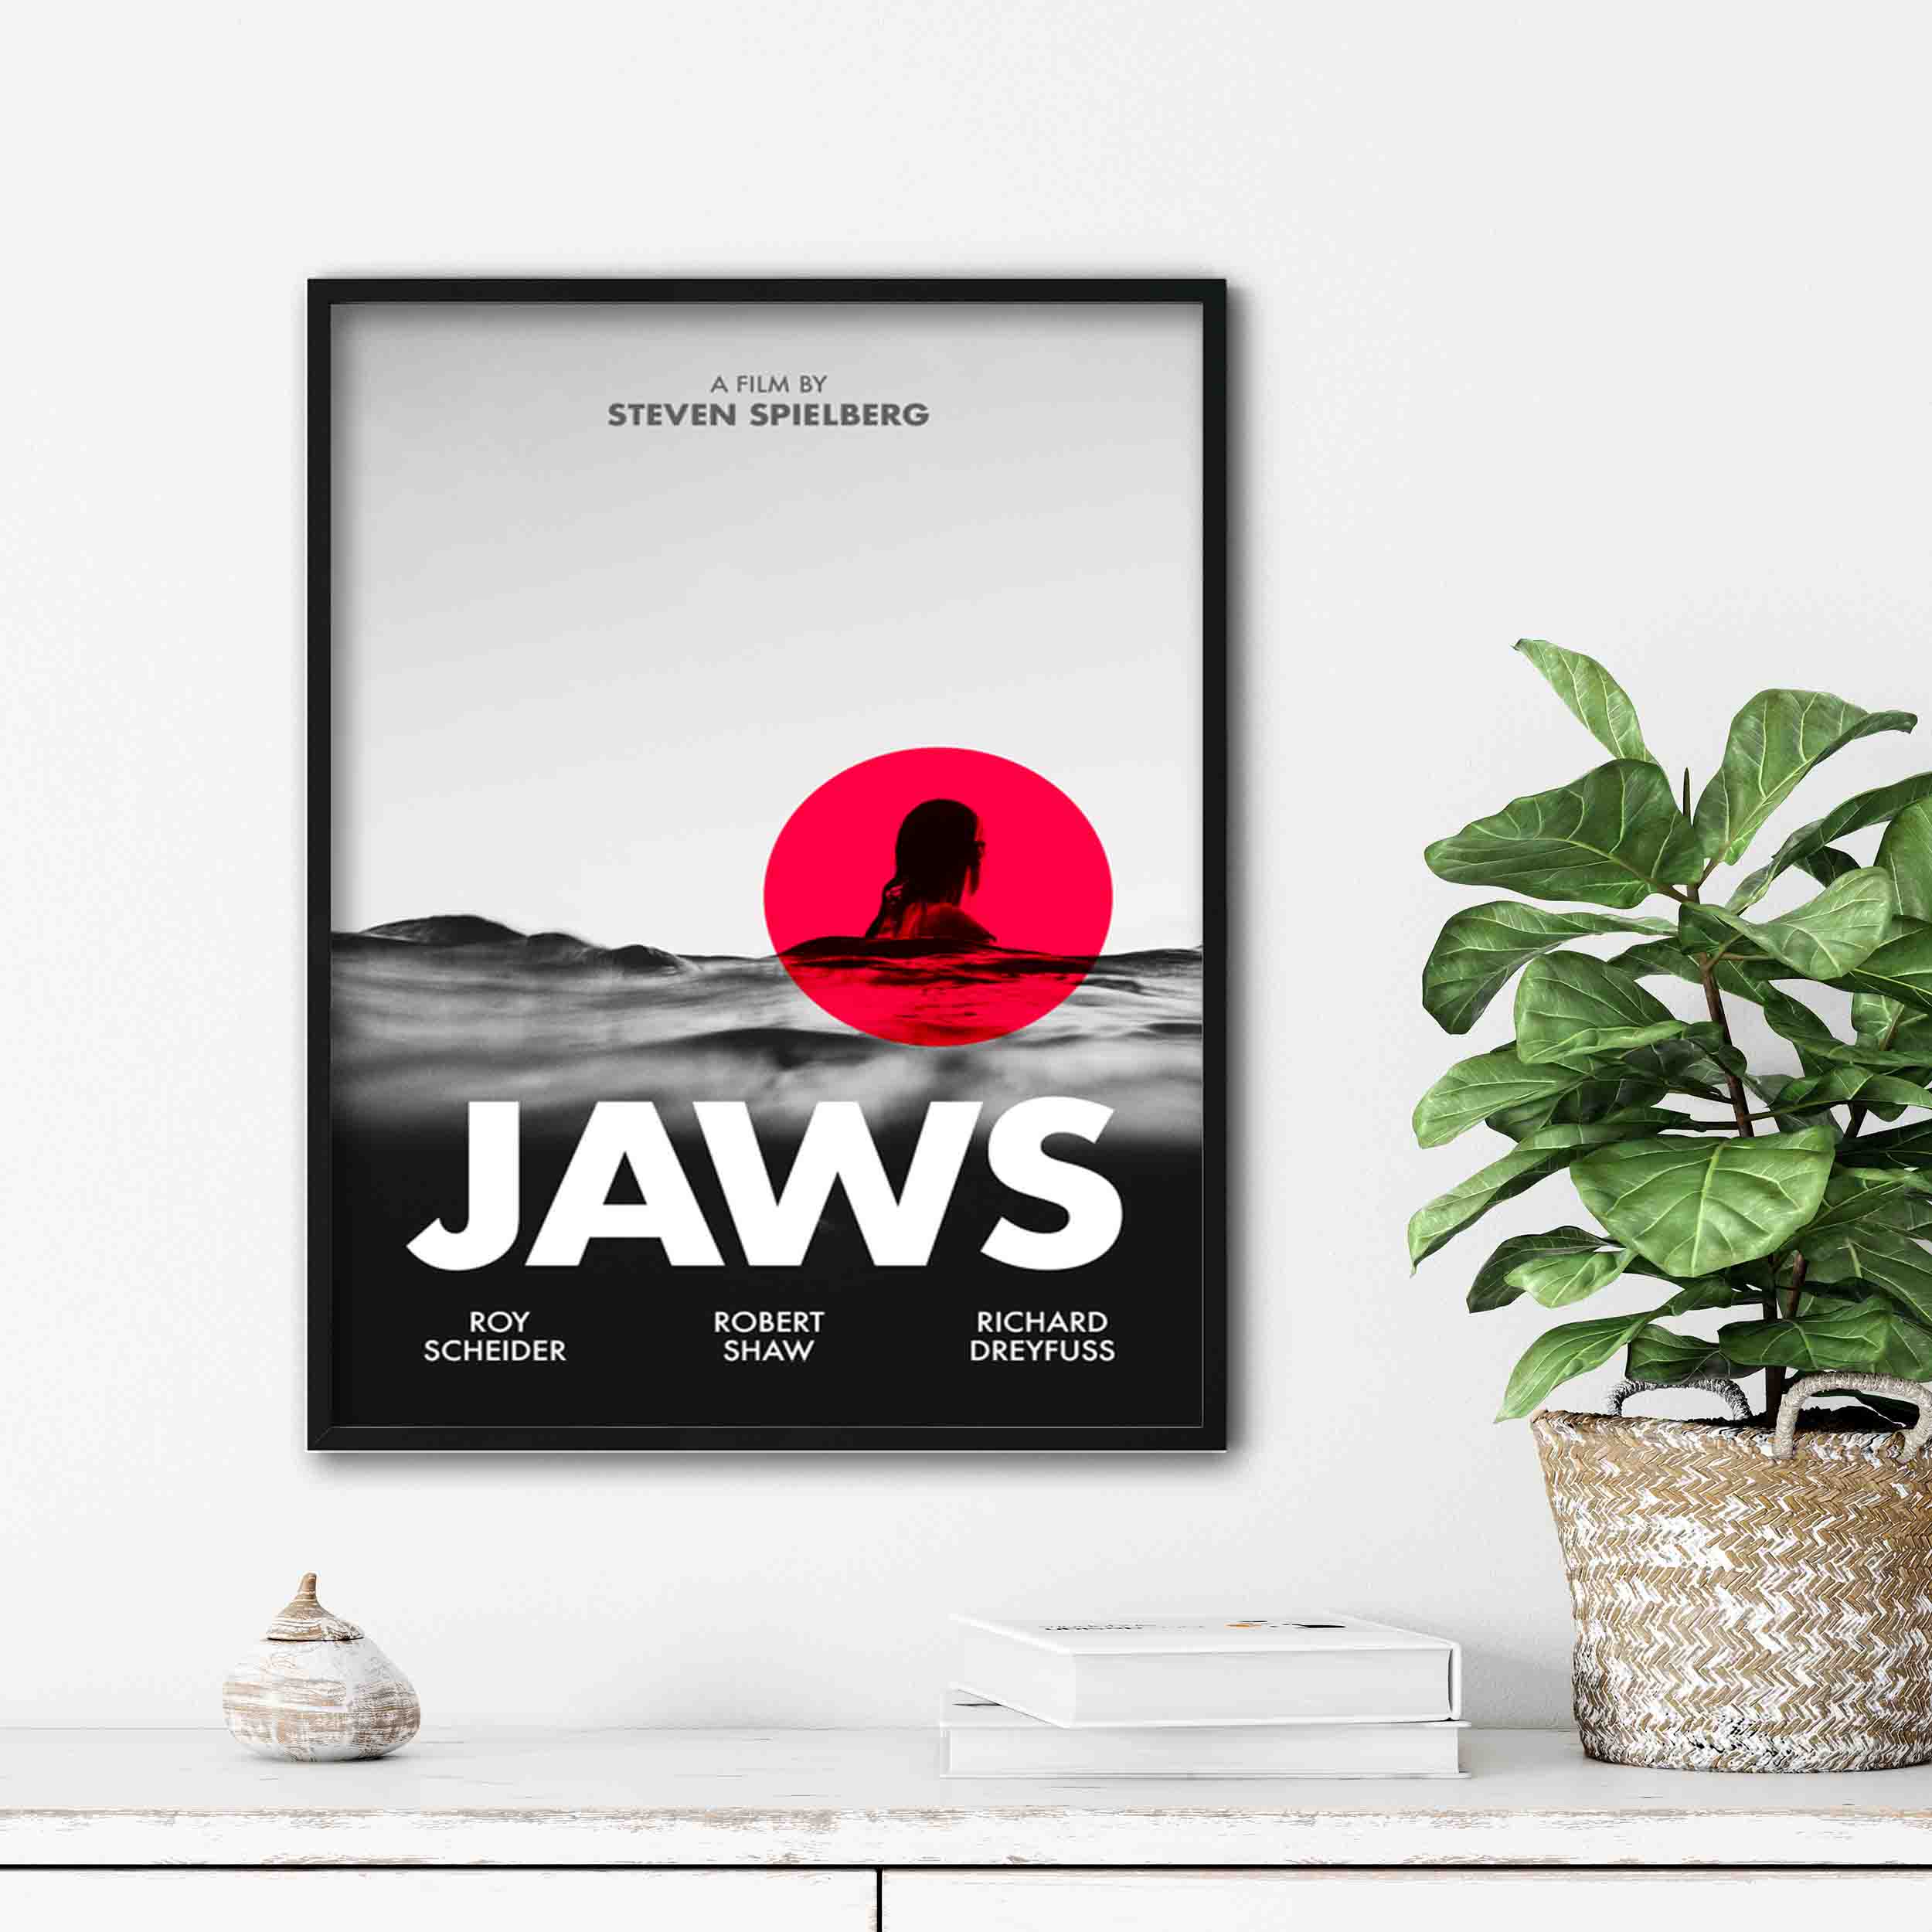 تابلو آتریسا طرح پوستر فیلم Jaws مدل ATm584